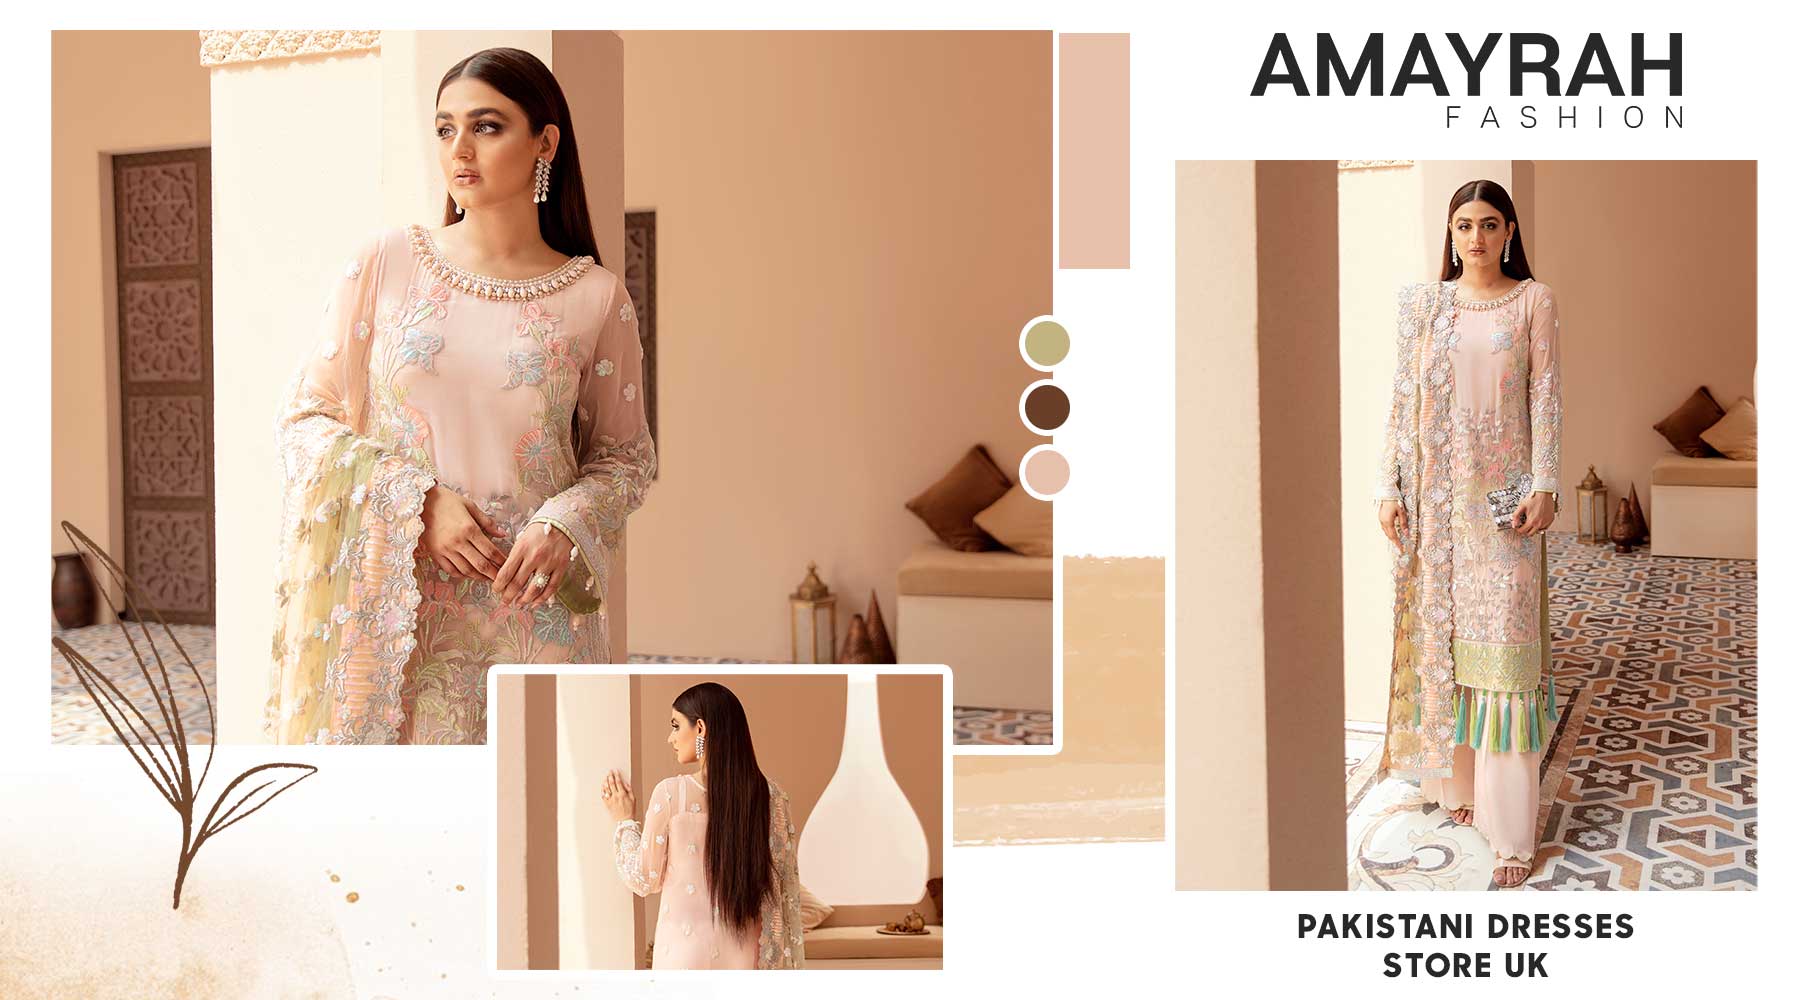 Amayrah Fashion: Redefining Luxury Pakistani Dresses in the UK